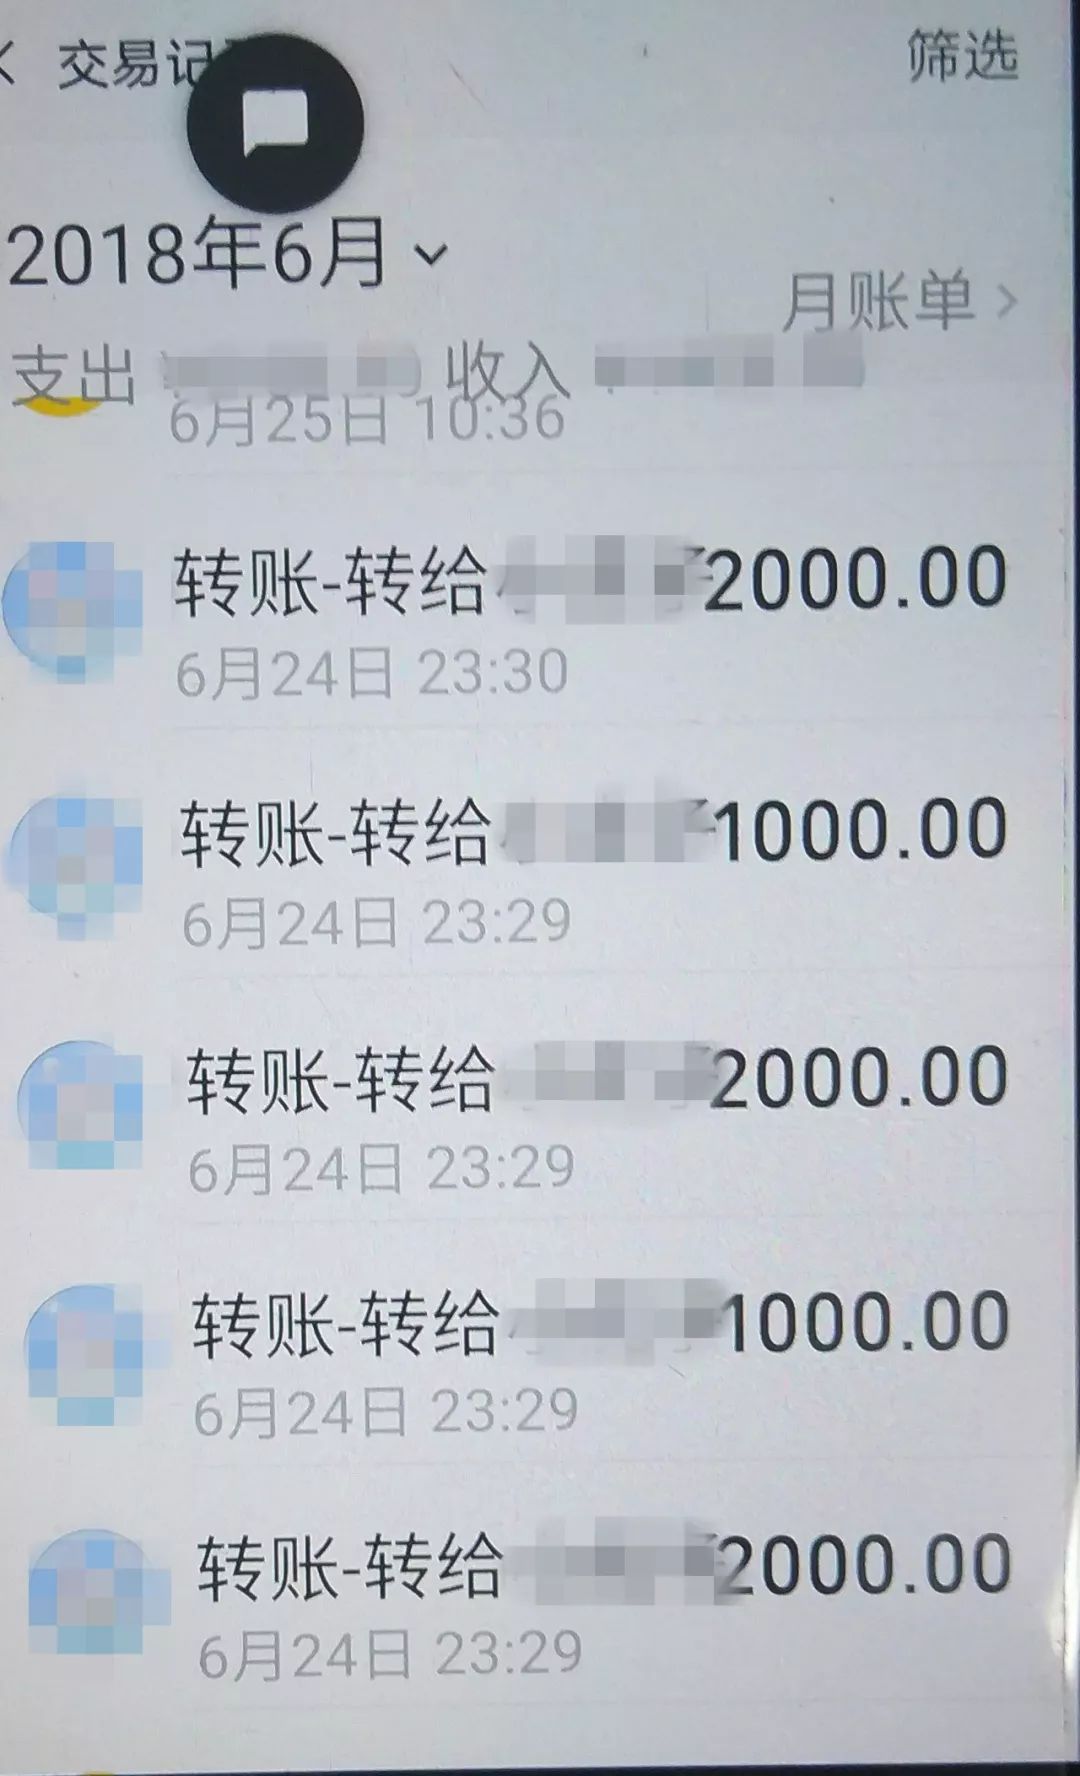 男子教邻居微信转账偷记密码盗窃8000元